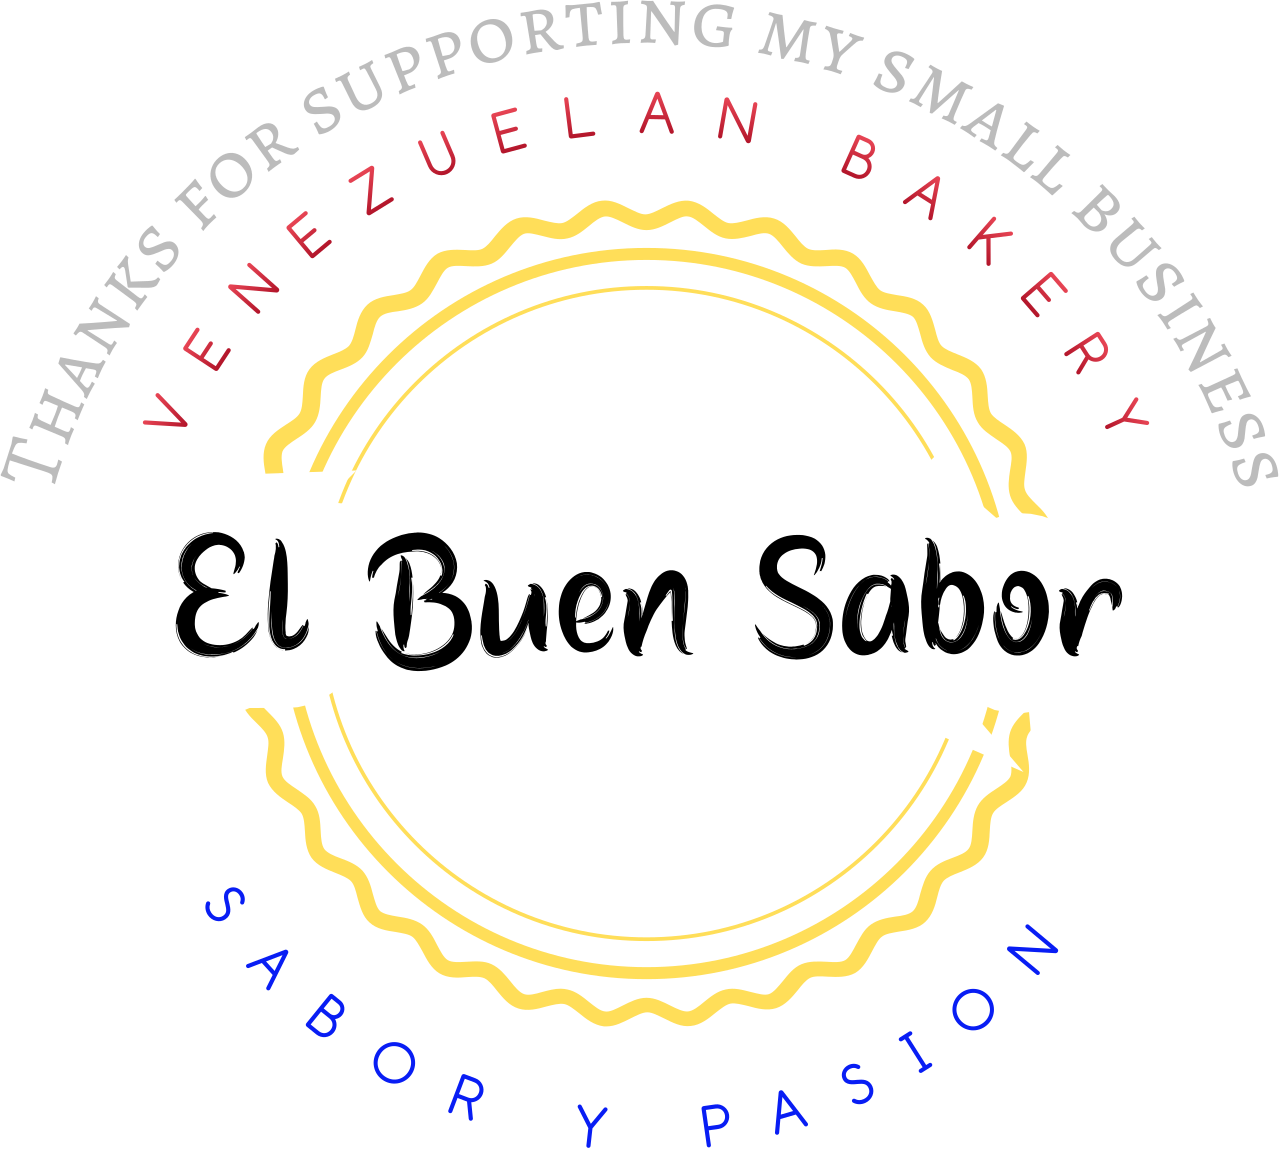 El Buen Sabor's web page